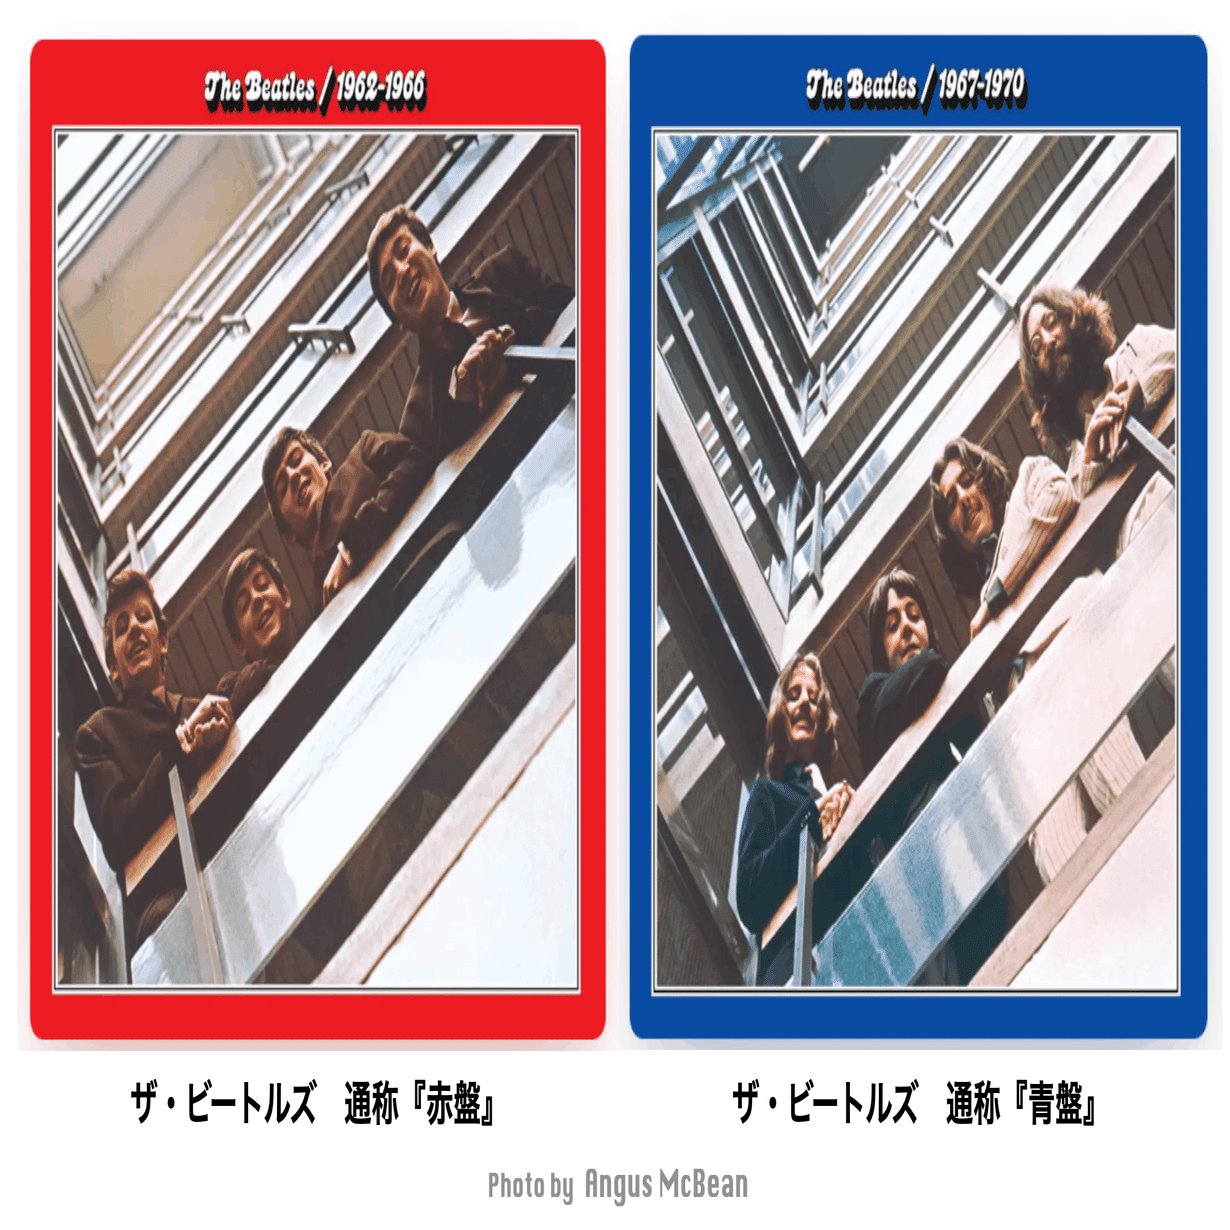 ザ・ビートルズ 赤盤1962-1966 青盤1967-1970 アナログレコード即購入